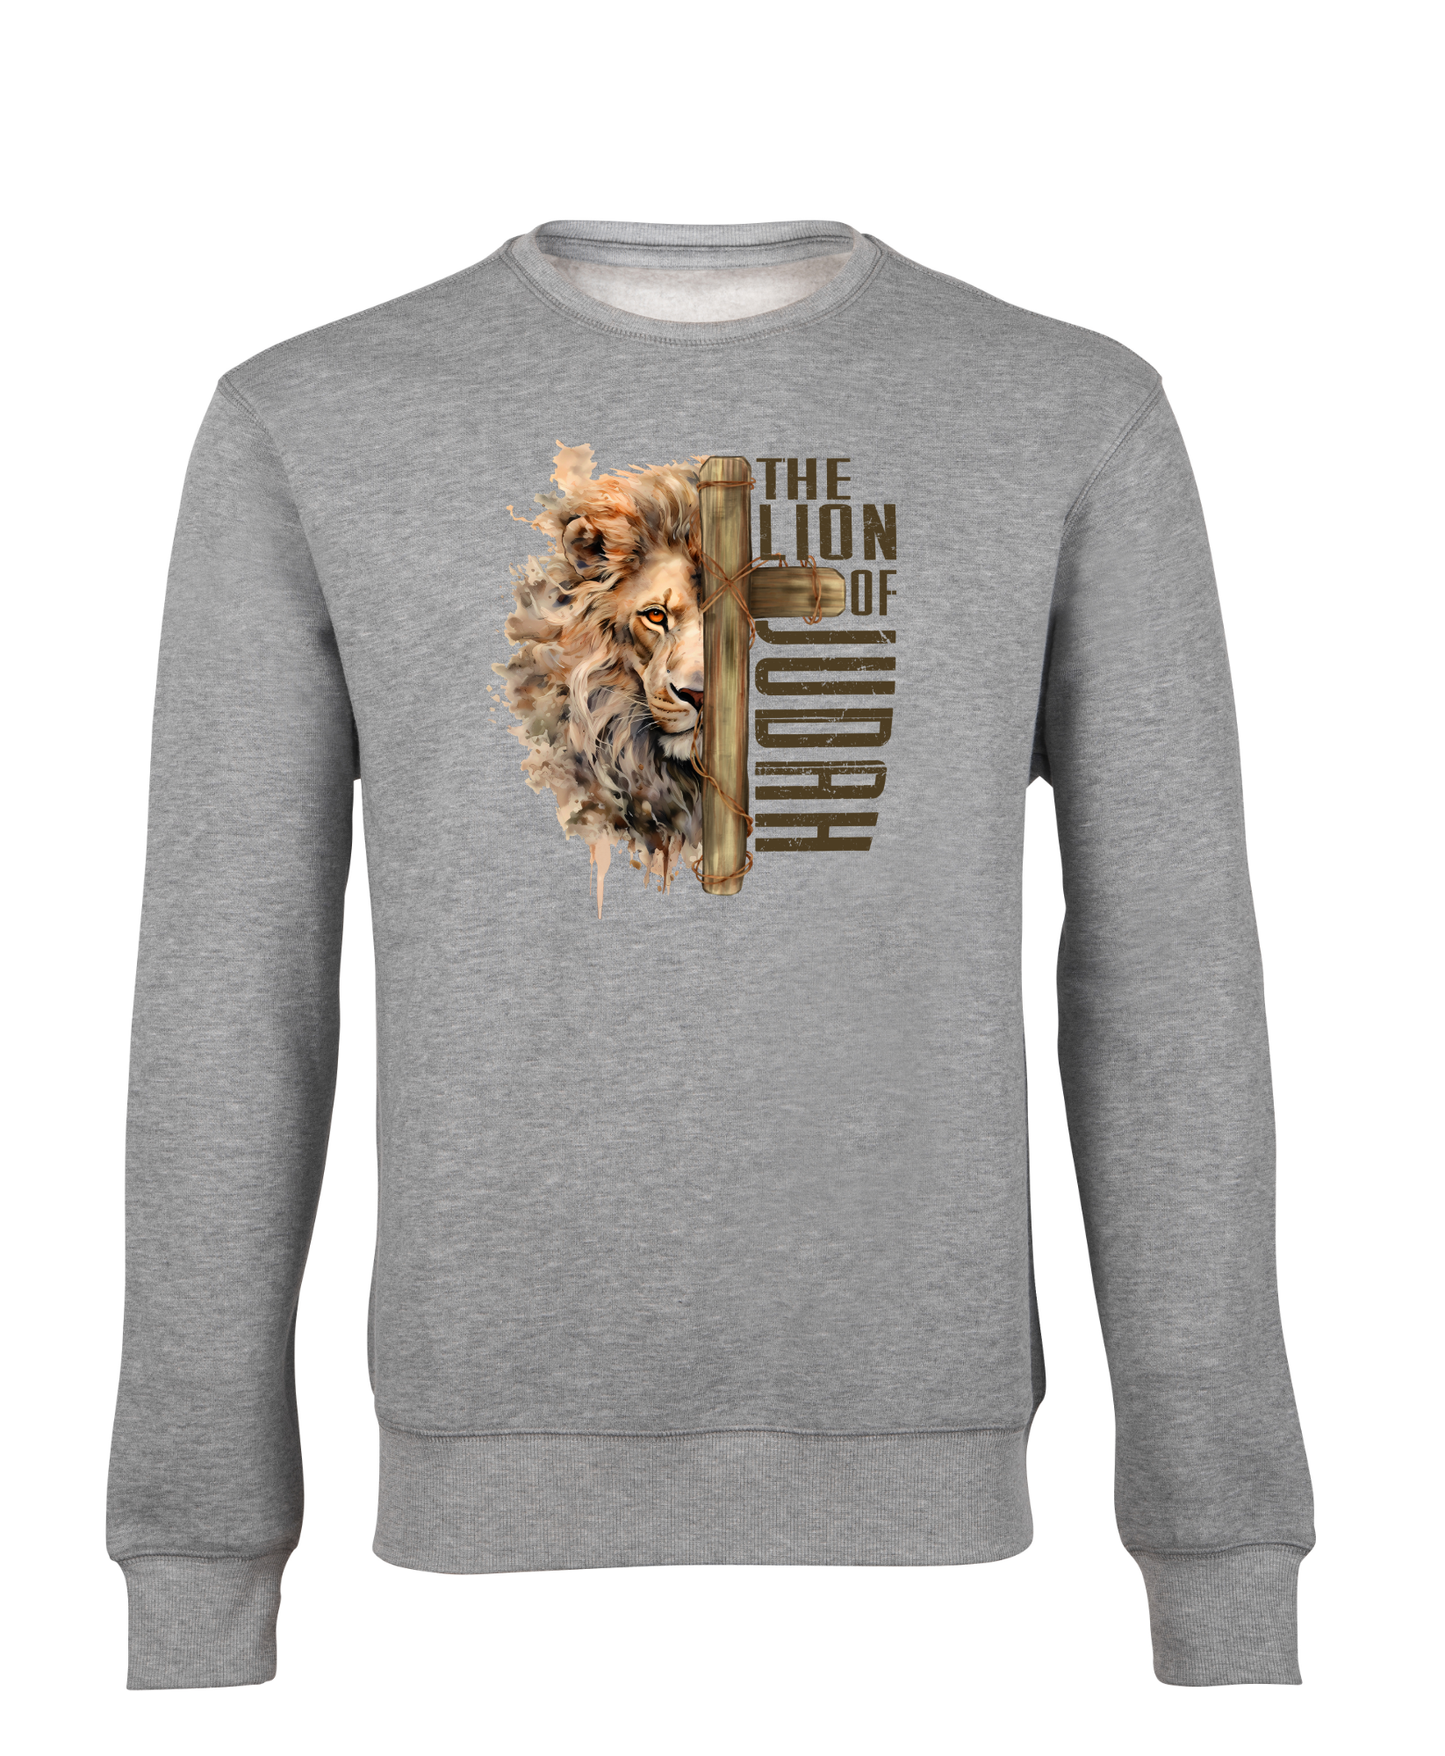 The Lion of Judah - Sweatshirts - großer Aufdruck